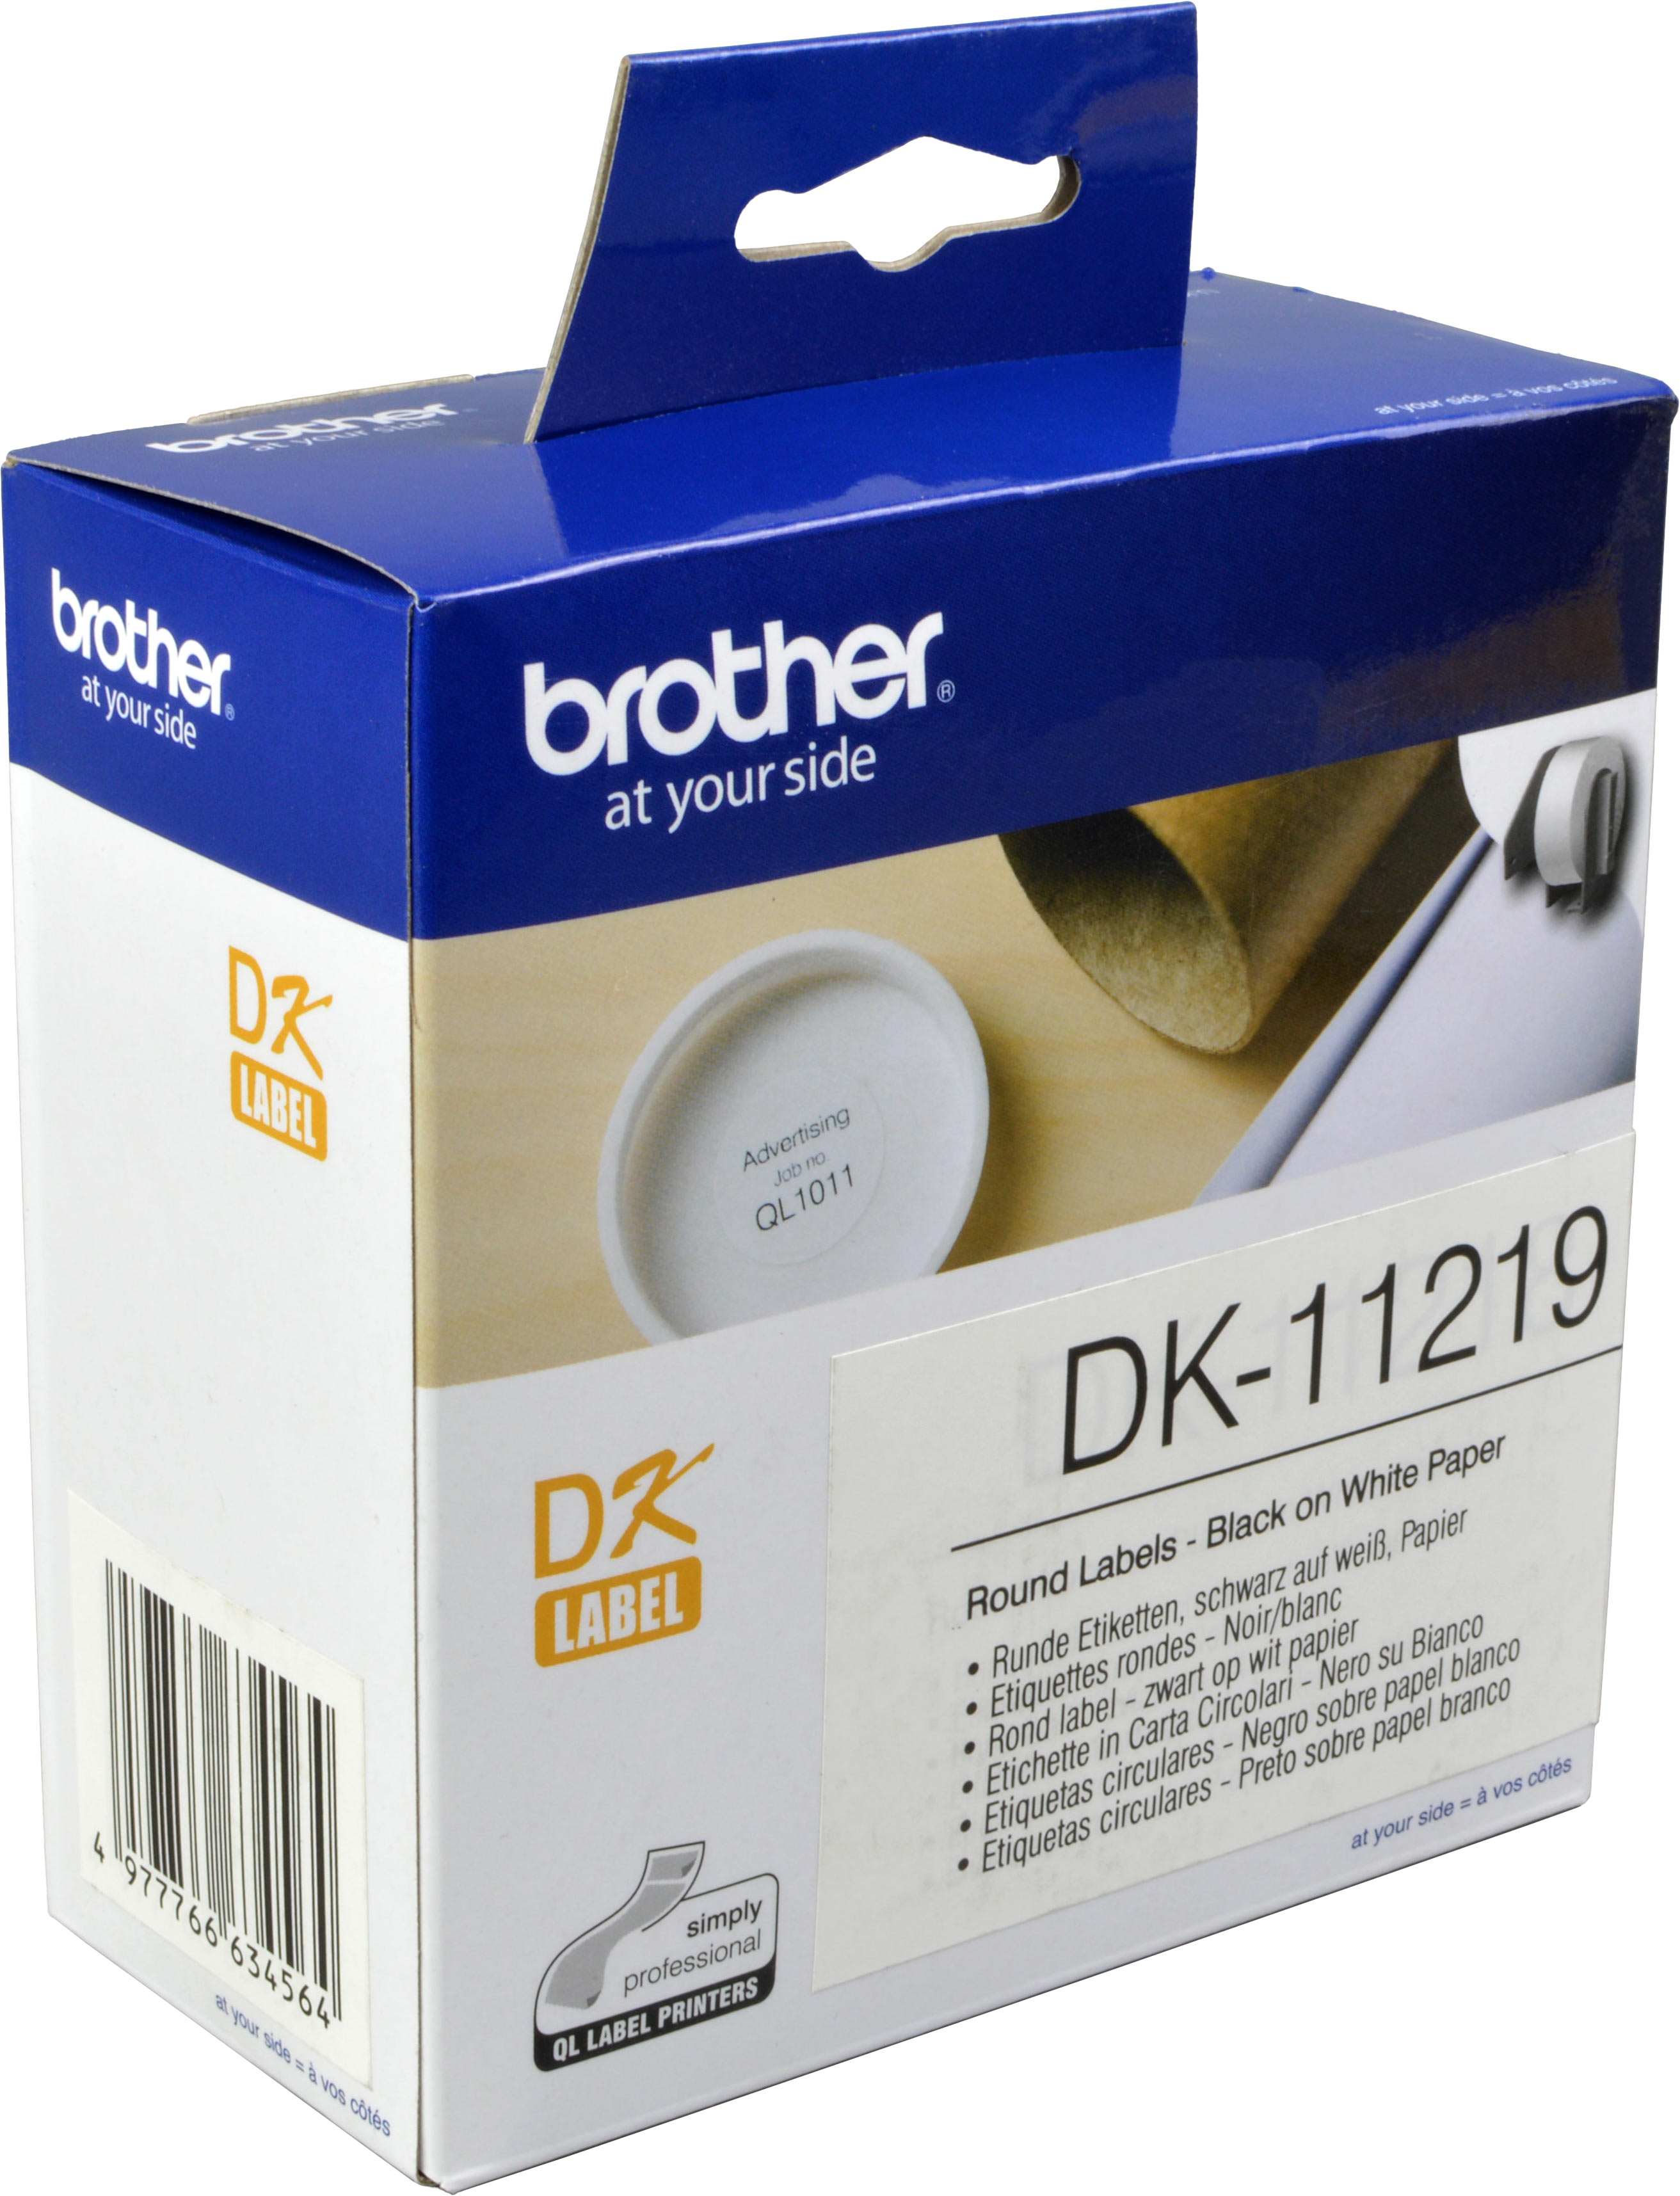 Brother PT Etiketten DK11219  weiss rund  12mm  1200 St. VE